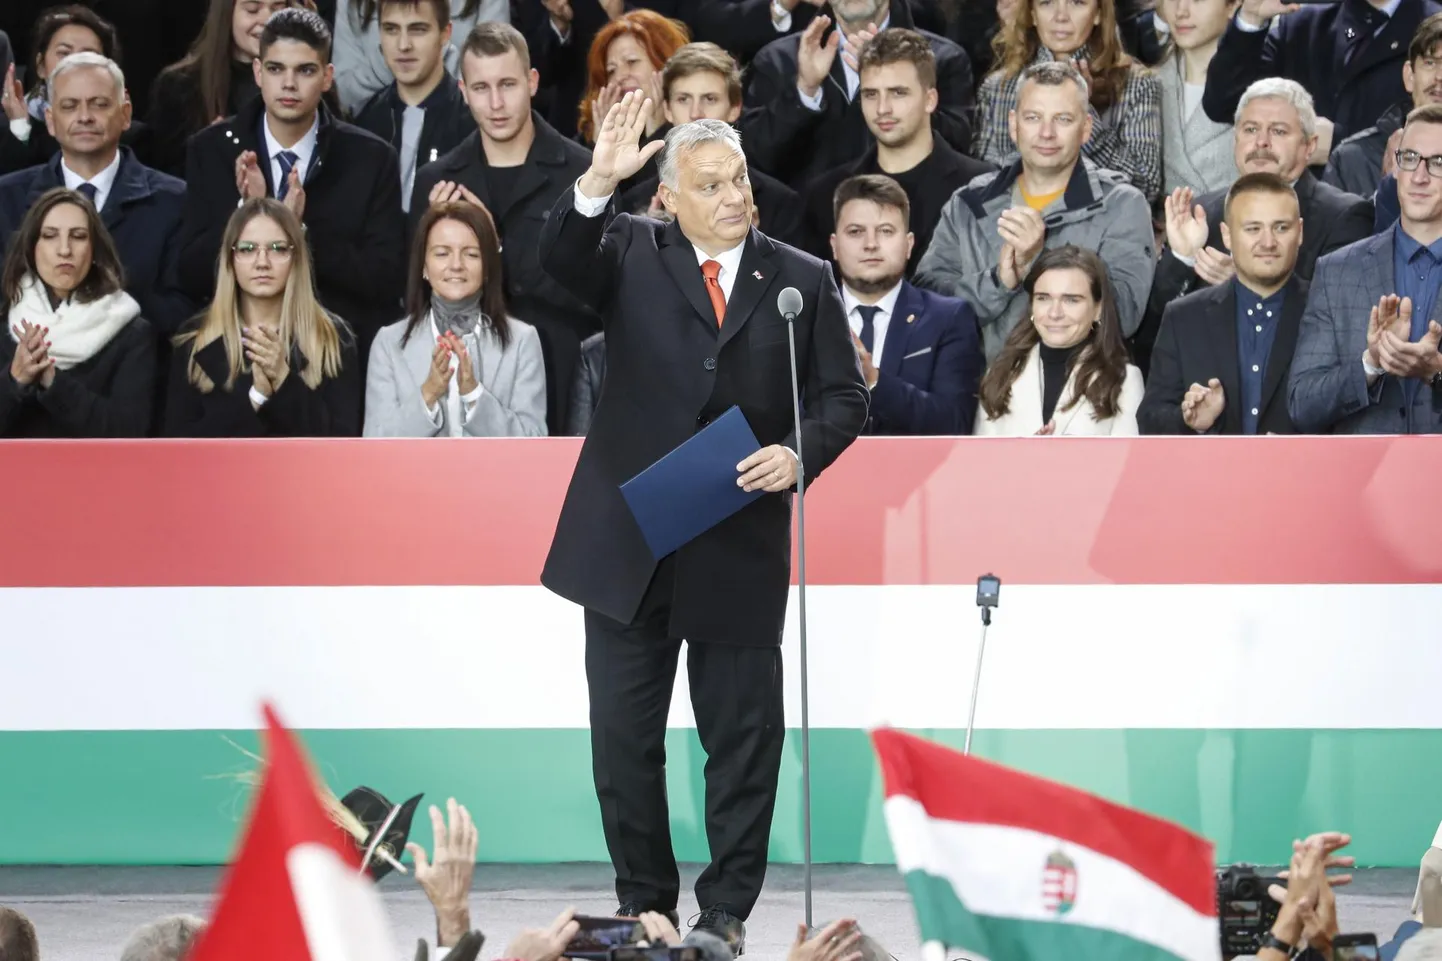 Ungari peaminister Viktor Orbán tänavusel Ungari ülestõusu 65. aastapäeval, kus ta pidas kõne tuhandetele toetajatele. «Euroopas küsitakse tihti, miks ungarlased Fideszit väga toetavad, kuid see ei vasta tõele,» ütleb Eszter Nagy. 